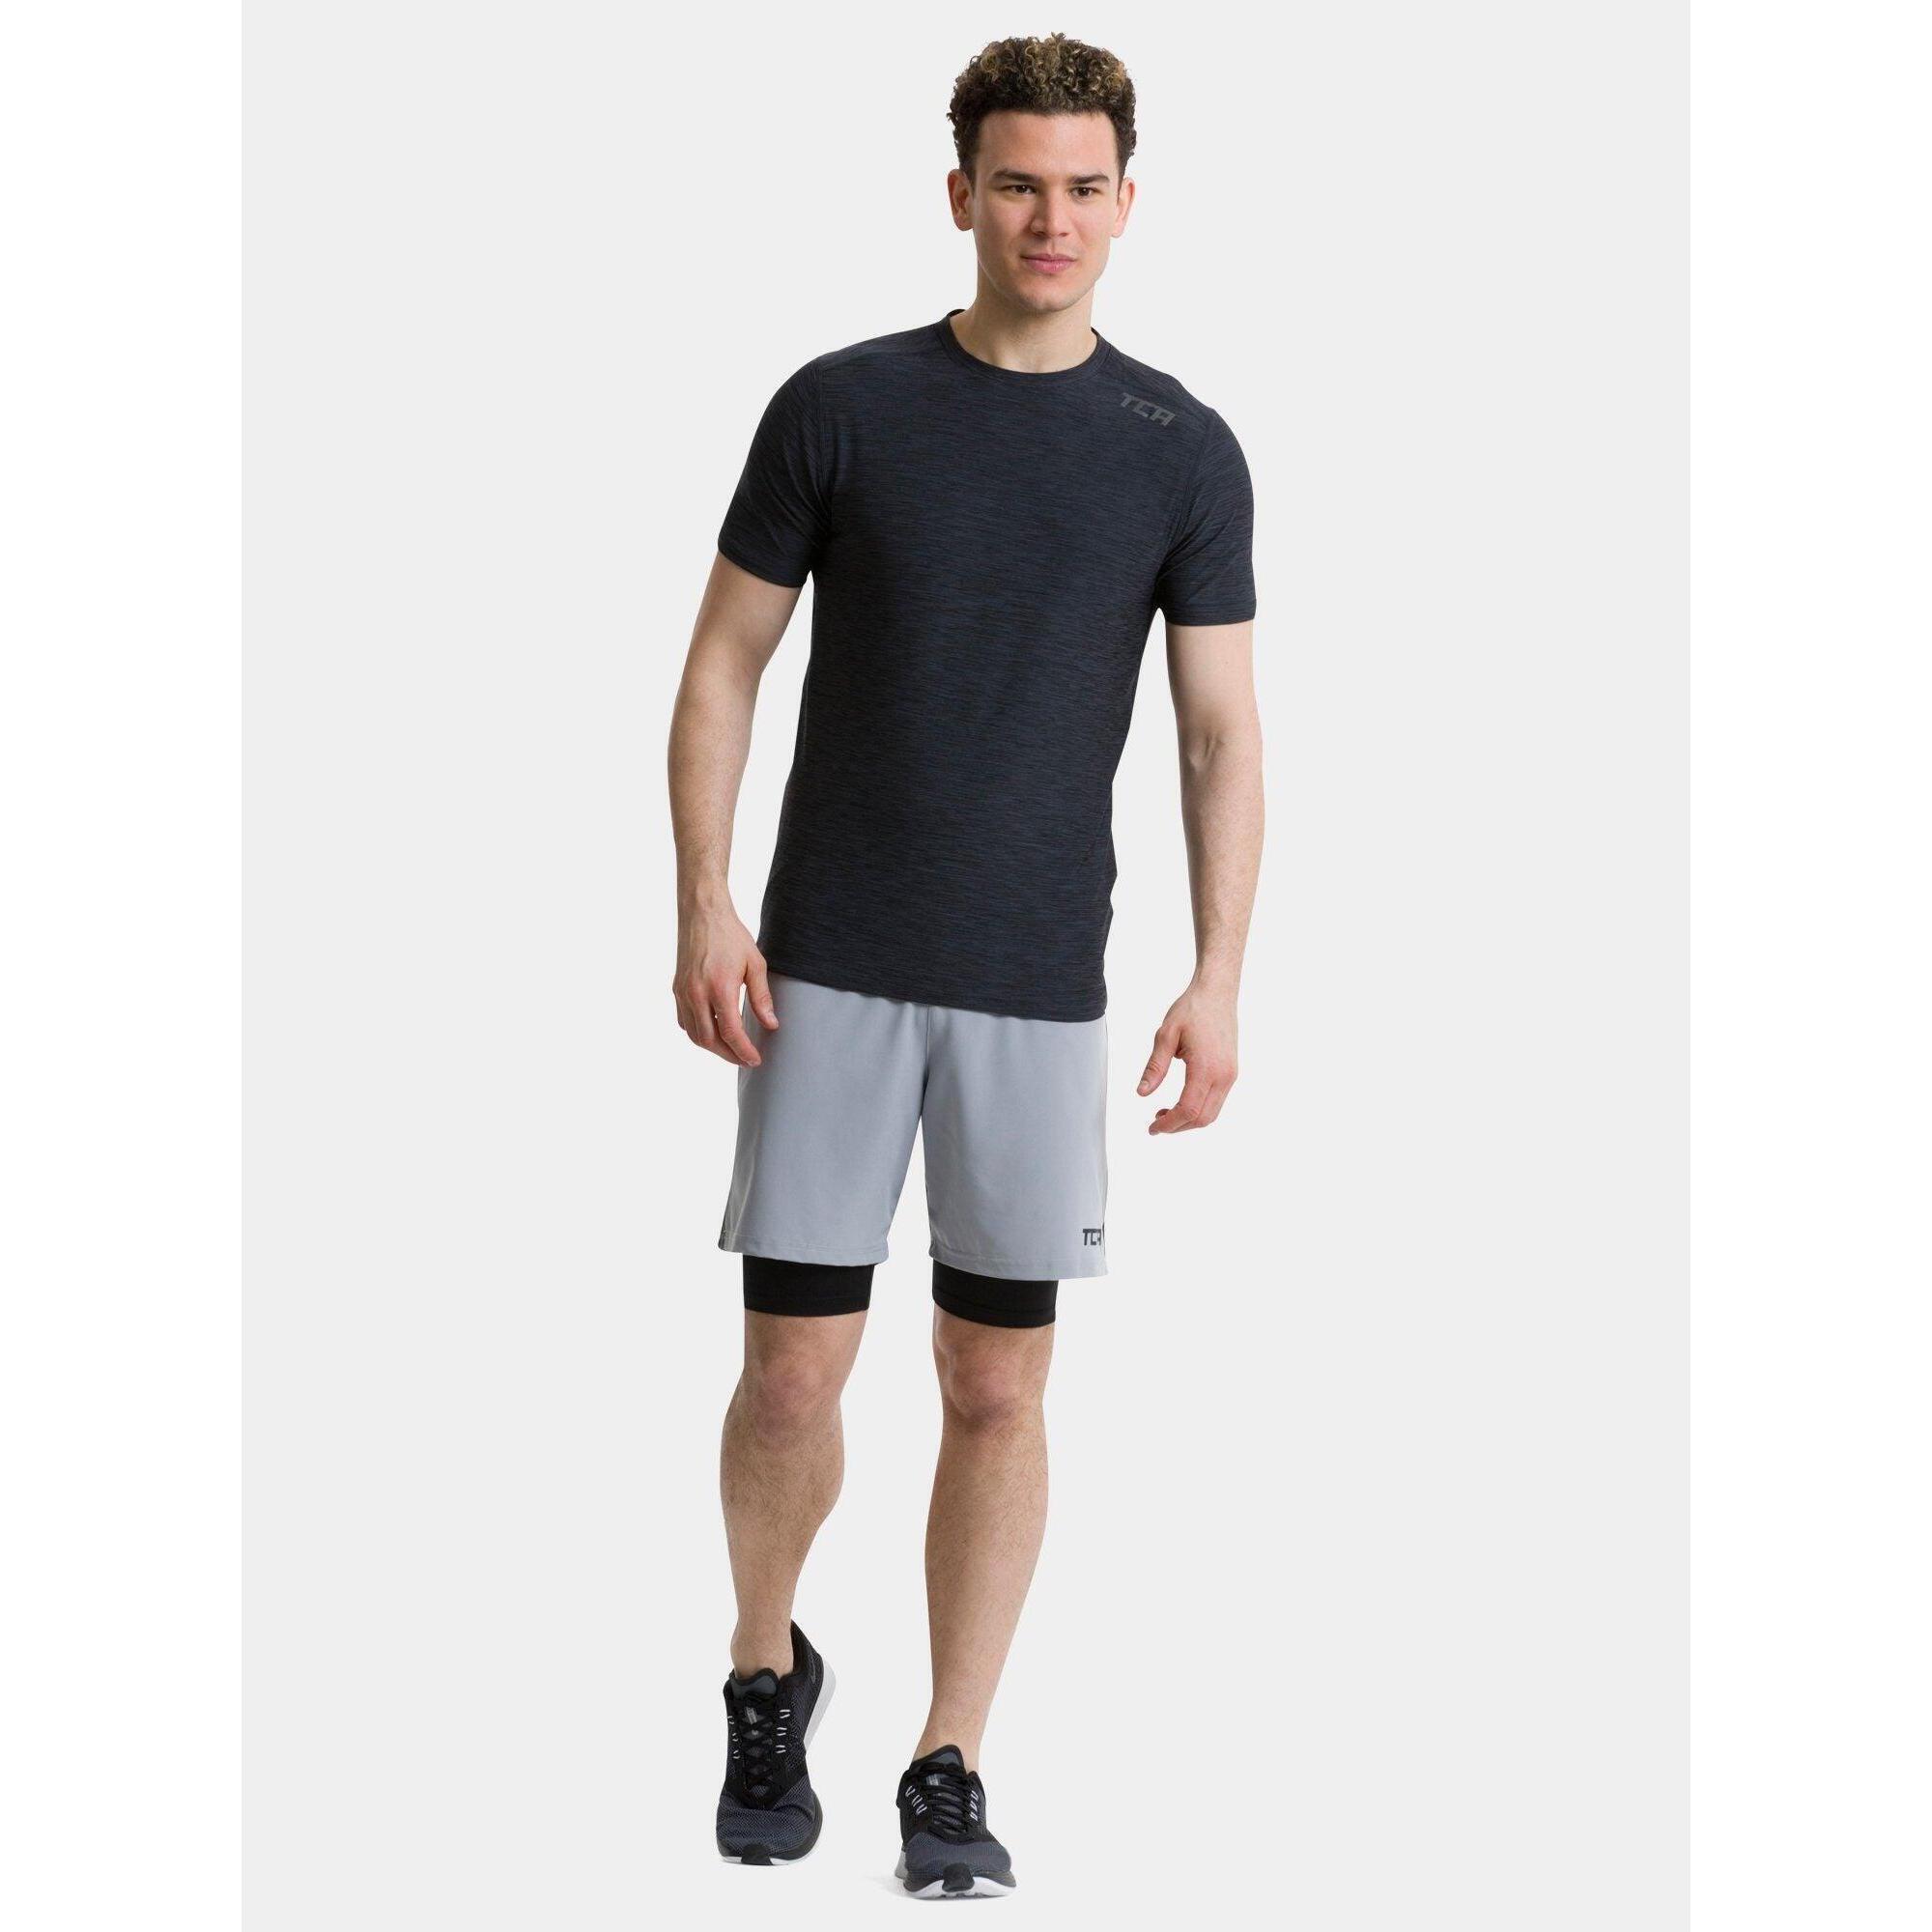 TCA Men’s Galaxy 4D-Stretch Running Gym T-Shirt - Black Marl